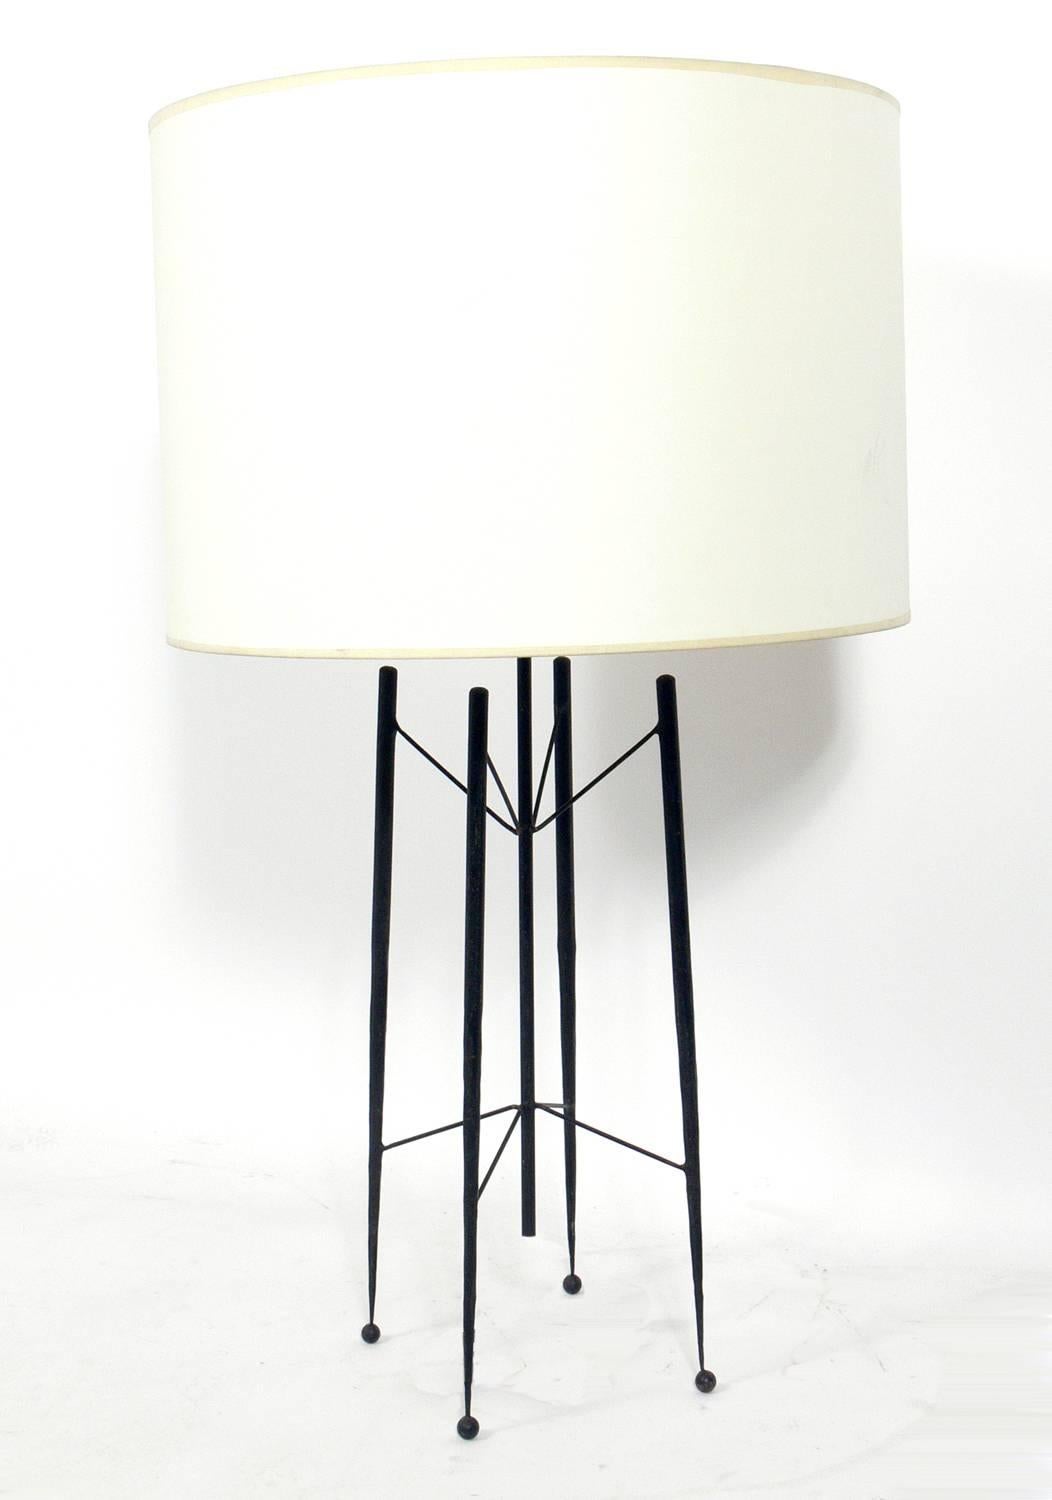 Lampe et candélabre sculpturaux en fer de style California Modern, conçus par Tony Paul pour Woodlin-Hall, États-Unis, vers les années 1950. Nous n'avons jamais vu cette lampe proposée à la vente auparavant. Il est sorti du même domaine que le